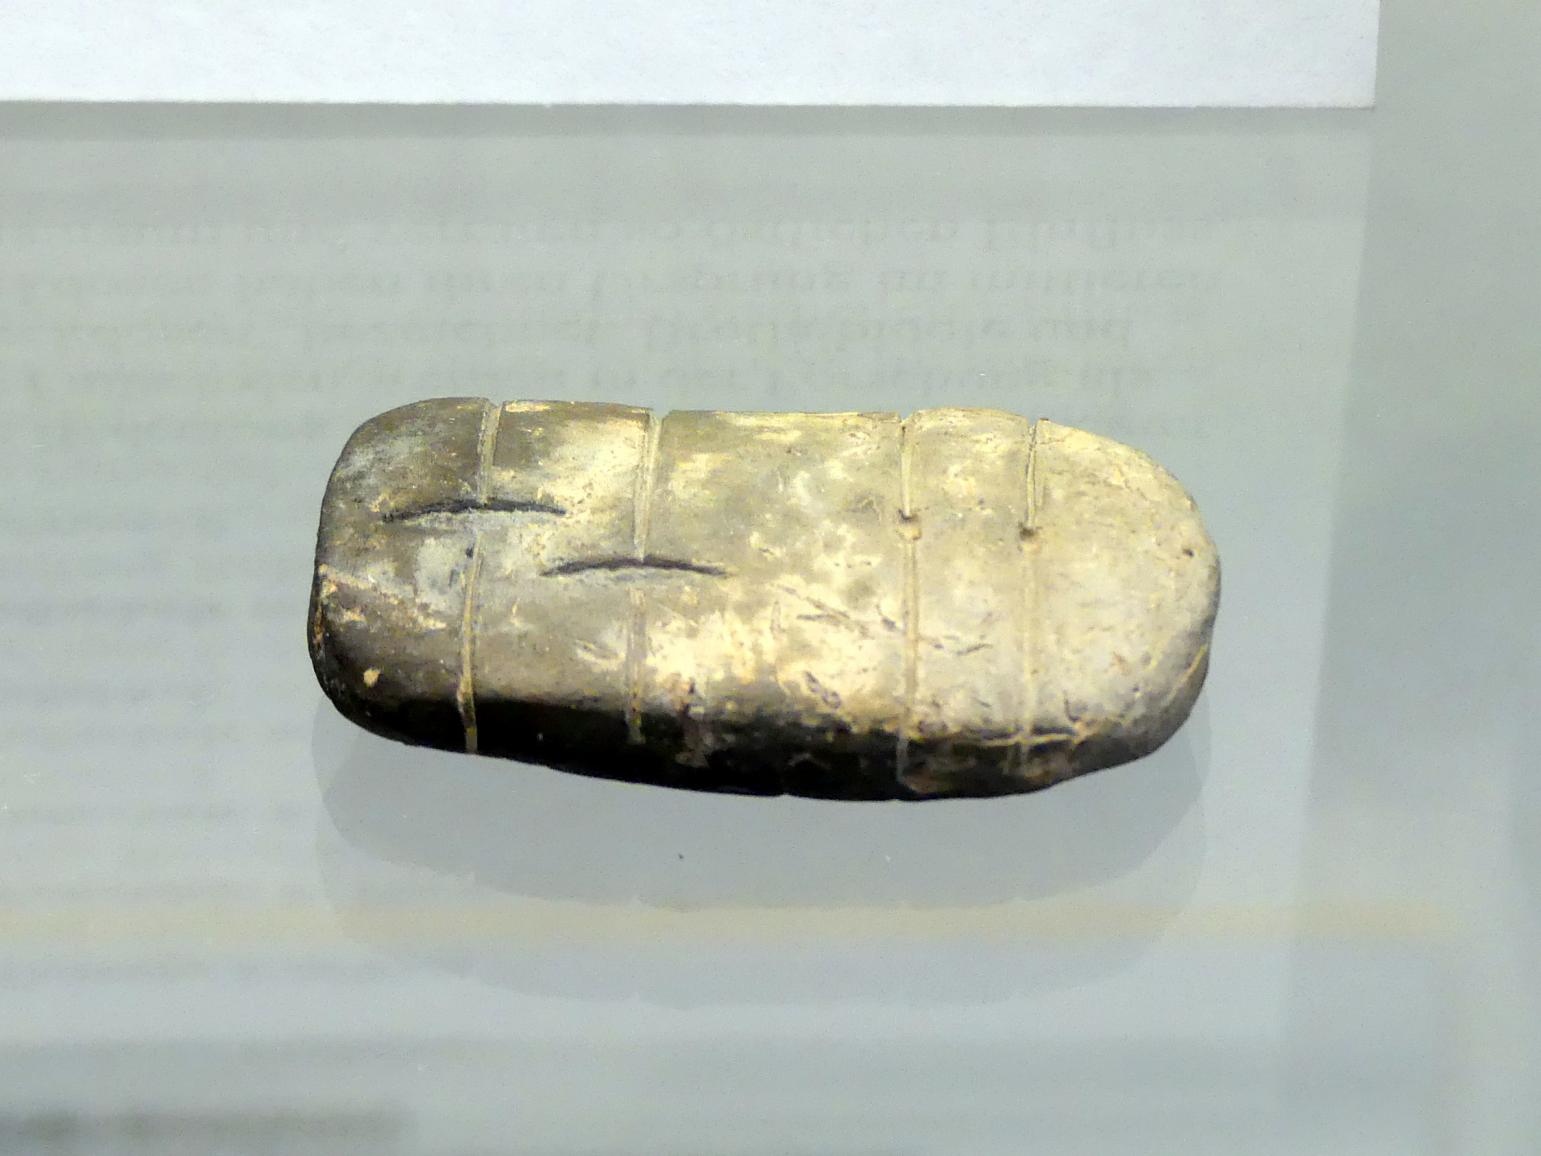 Tonobjekt in Form eines Brotlaibs (Brotlaibidol), Frühe Bronzezeit, 3365 - 1200 v. Chr.